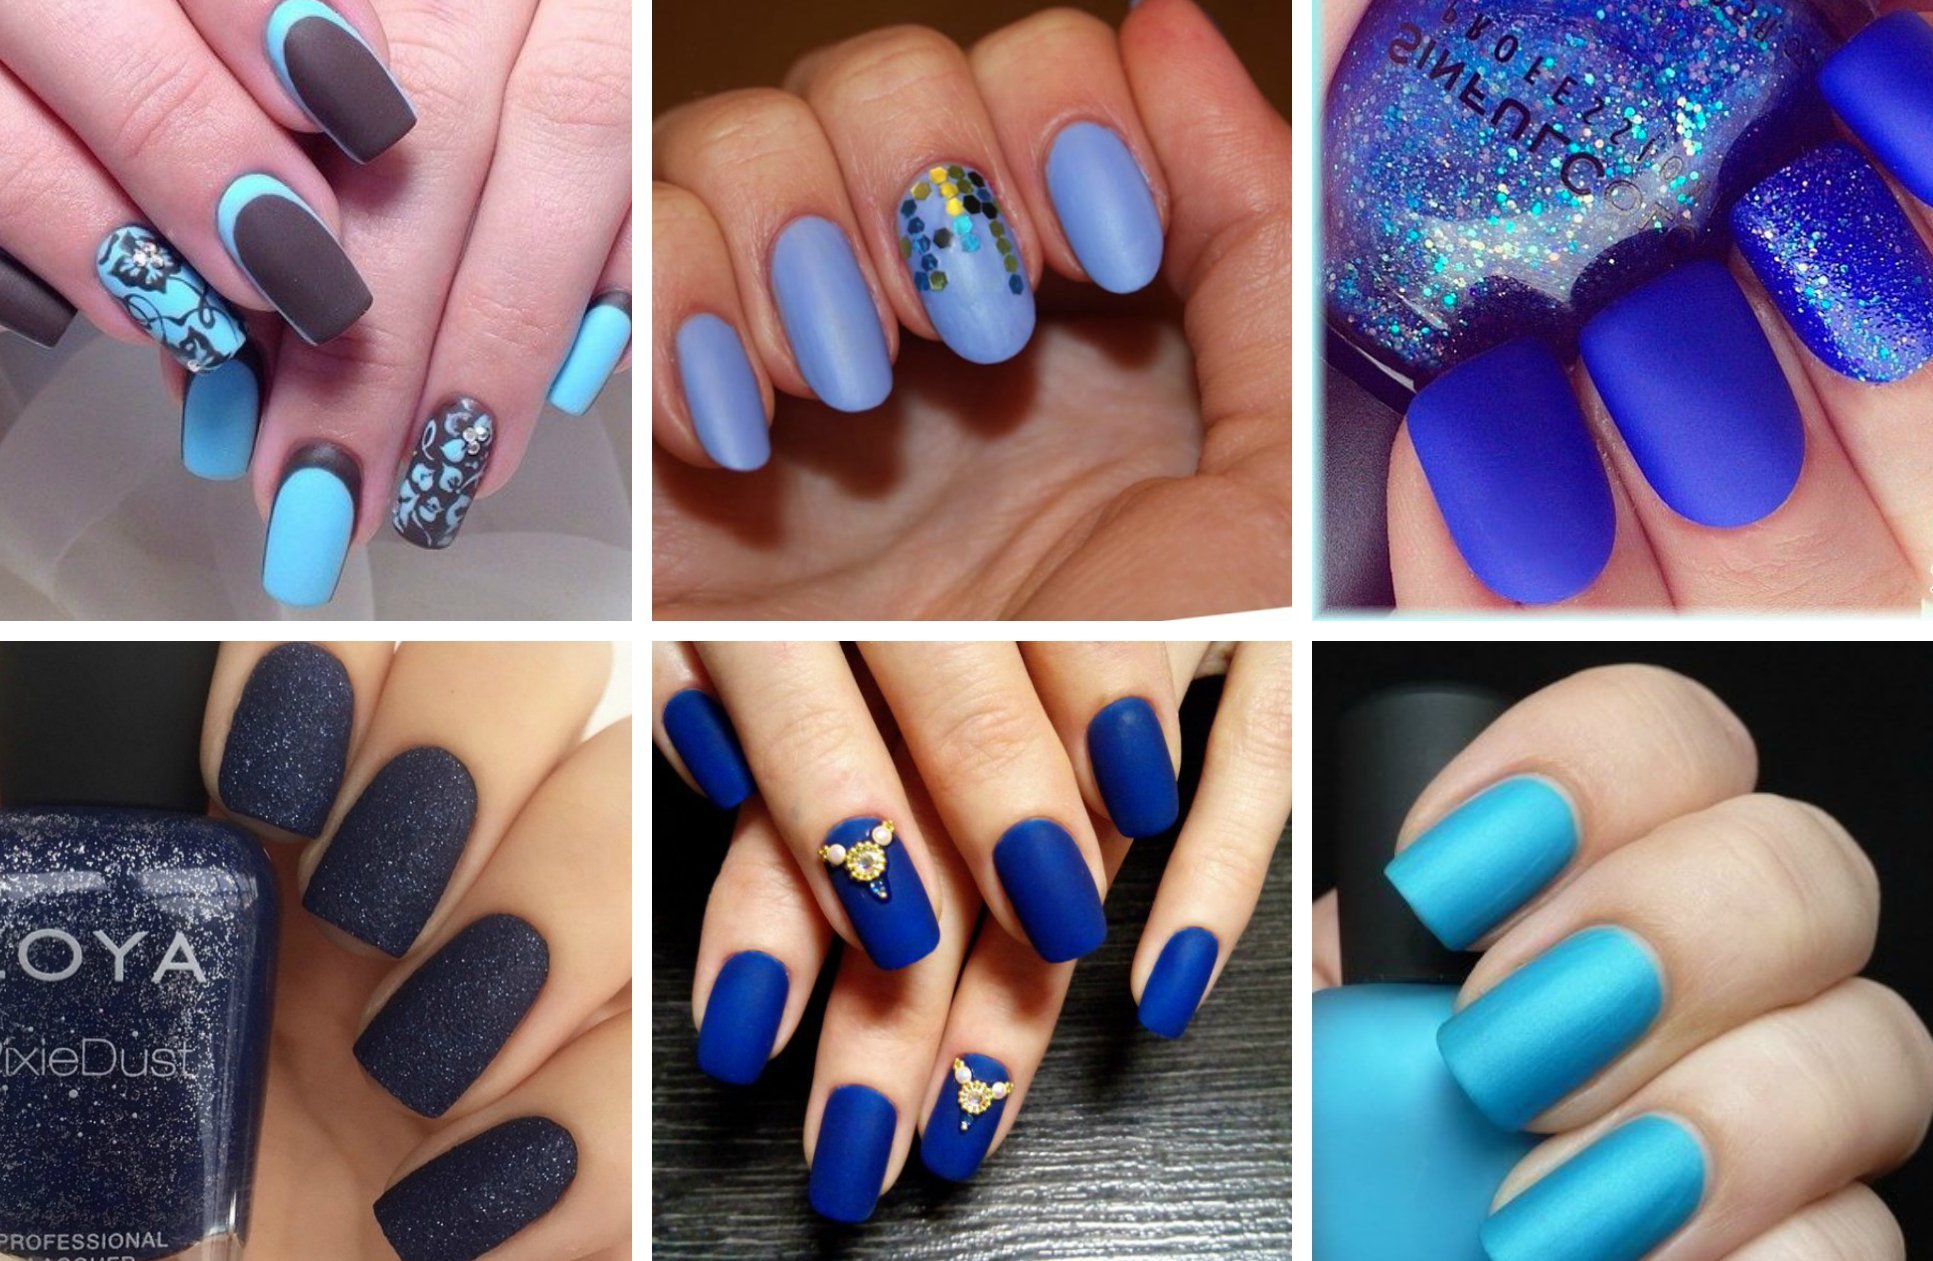 Цвета лаков сочетание. Синий матовый маникюр. Голубые ногти. Маникюр оттенки синего и голубого. Сочетание синего на ногтях.